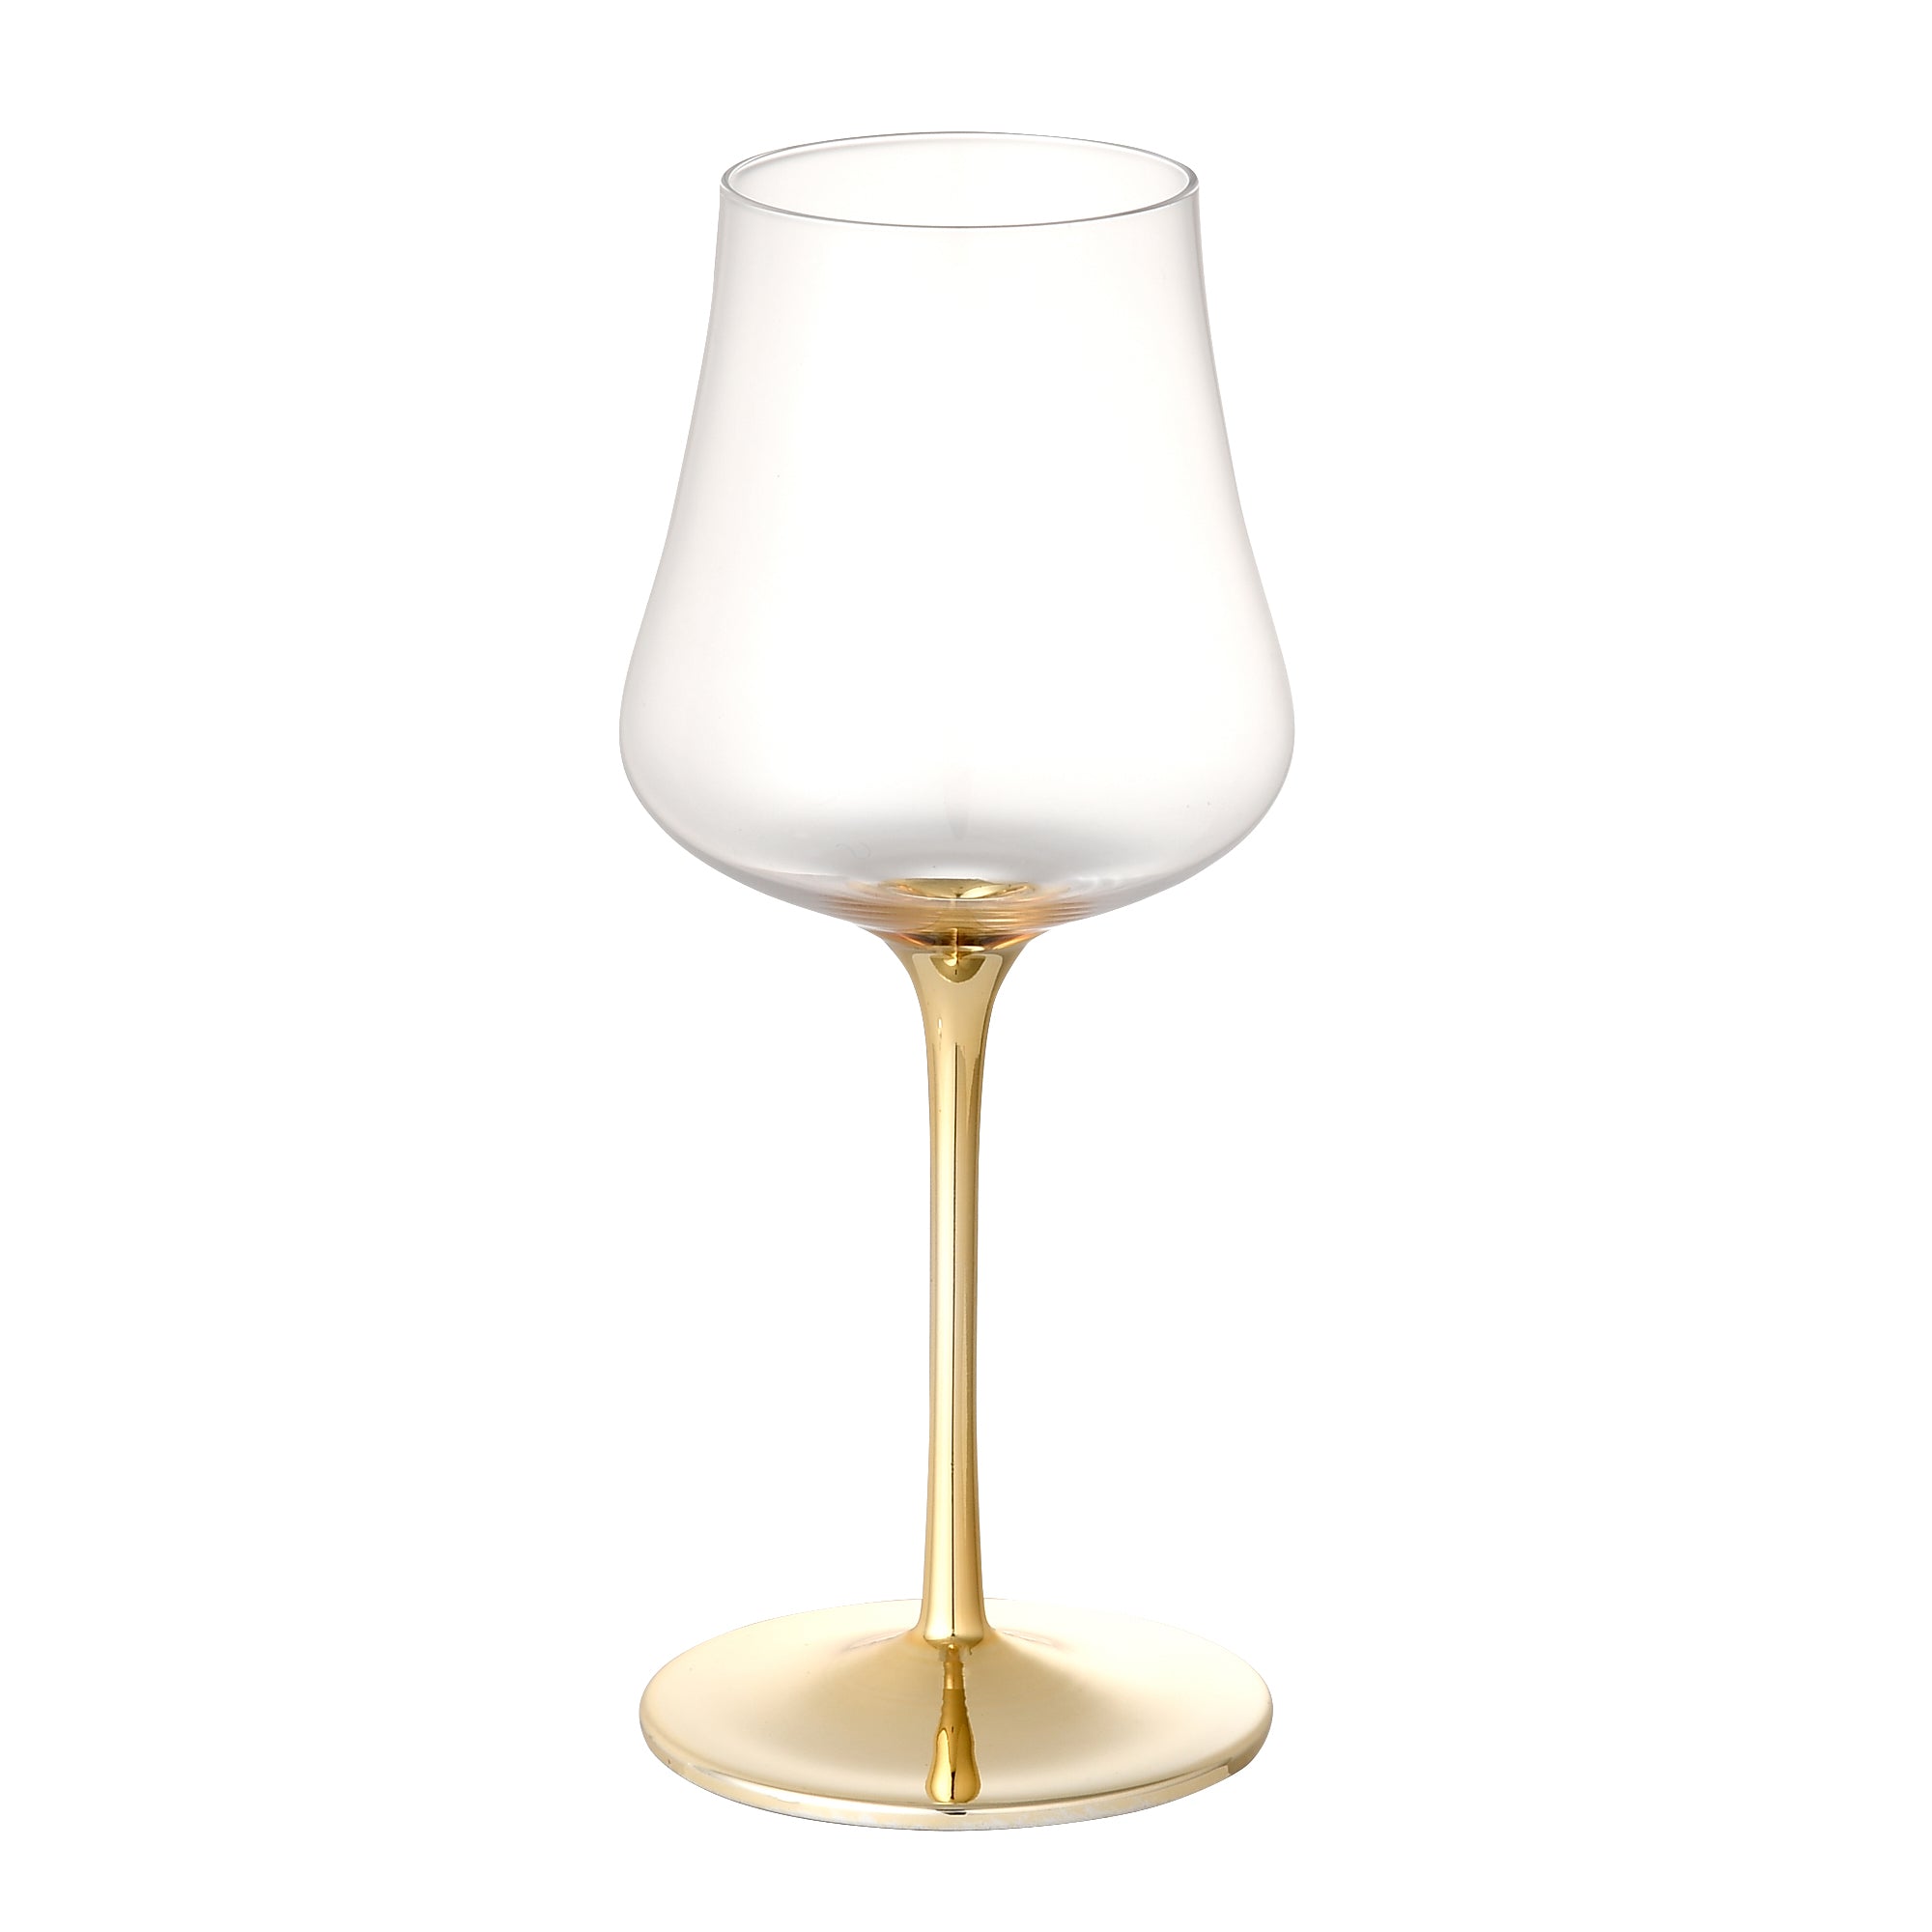 シーン ワイングラス ゴールド | Francfranc（フランフラン）公式通販